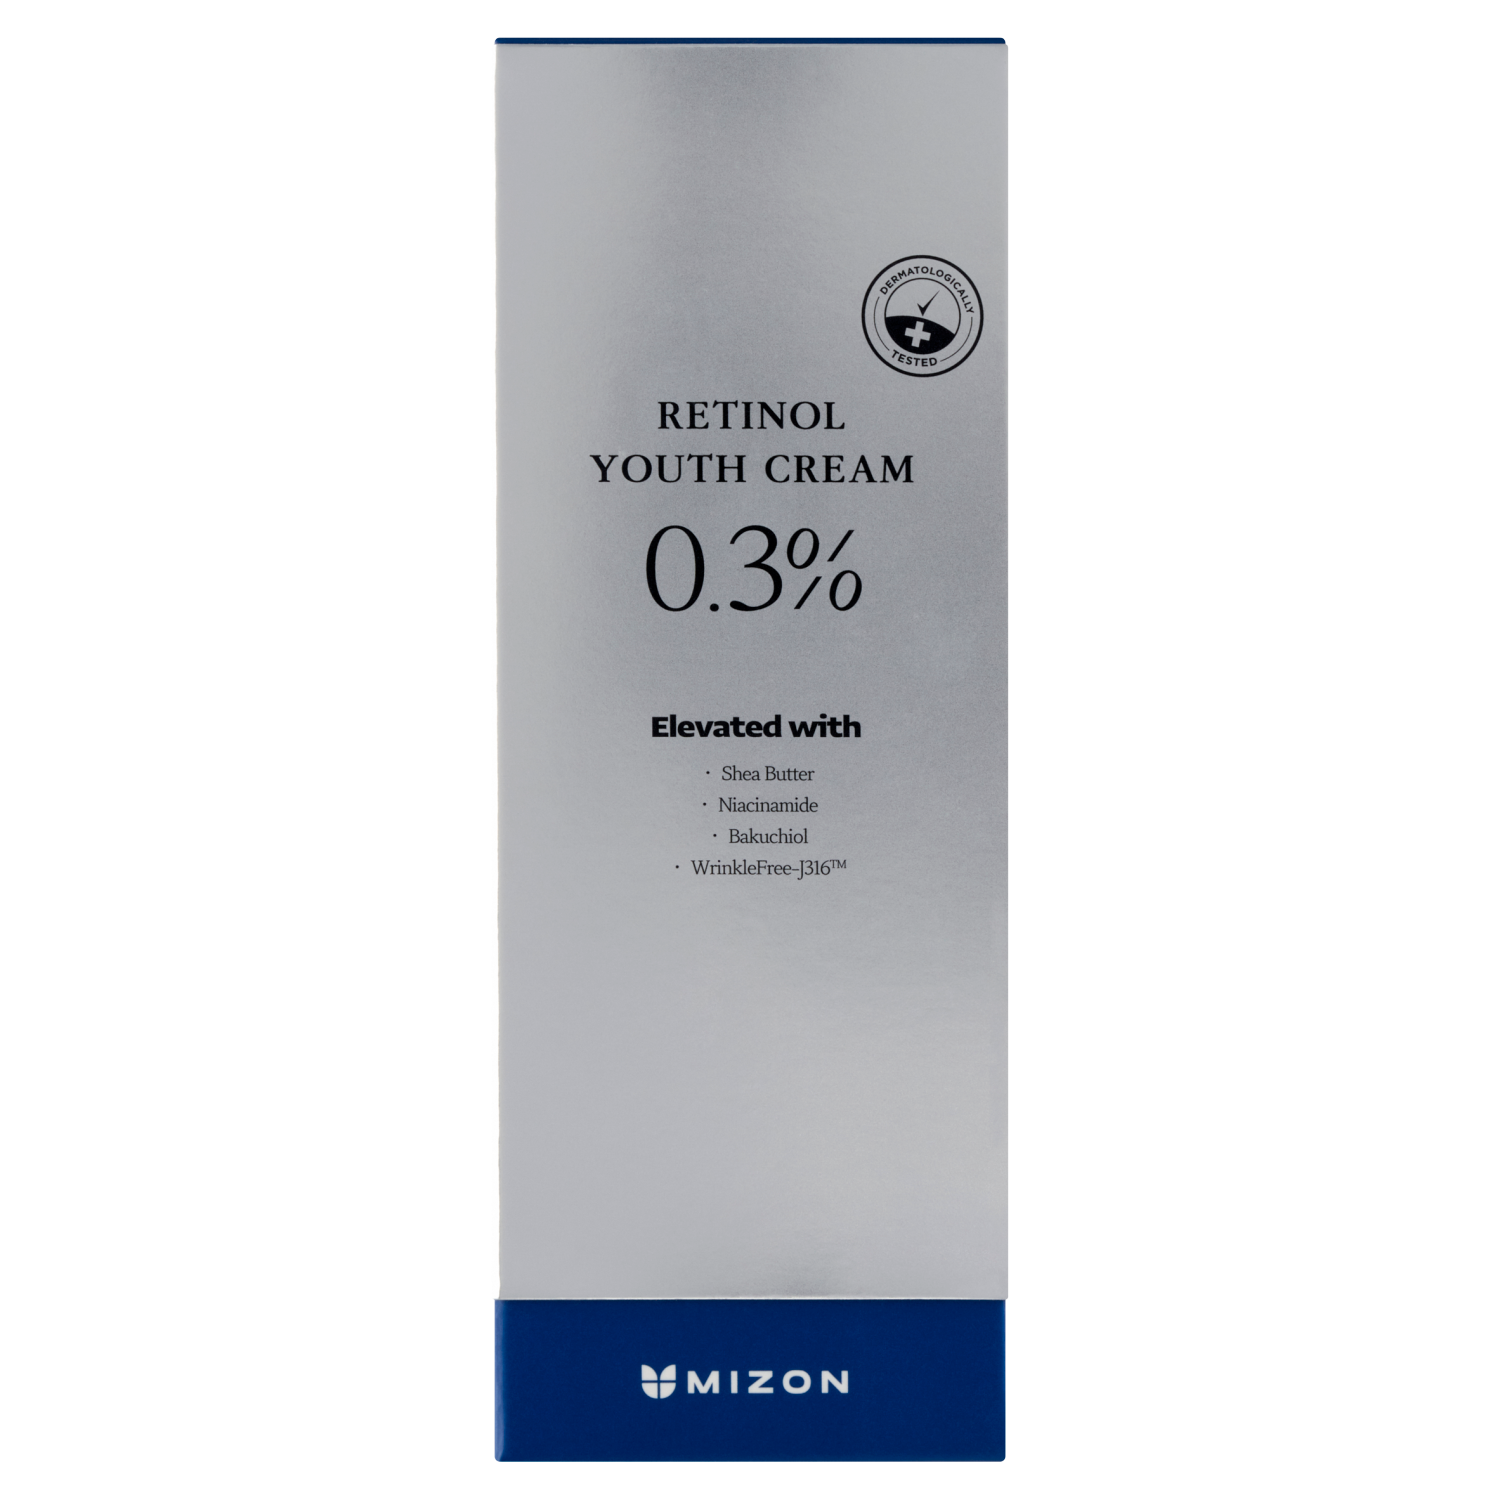 Омолаживающий крем для лица с Mizon, 26 гр омолаживающий крем для лица с ретинолом 0 3% retinol youth cream 26г